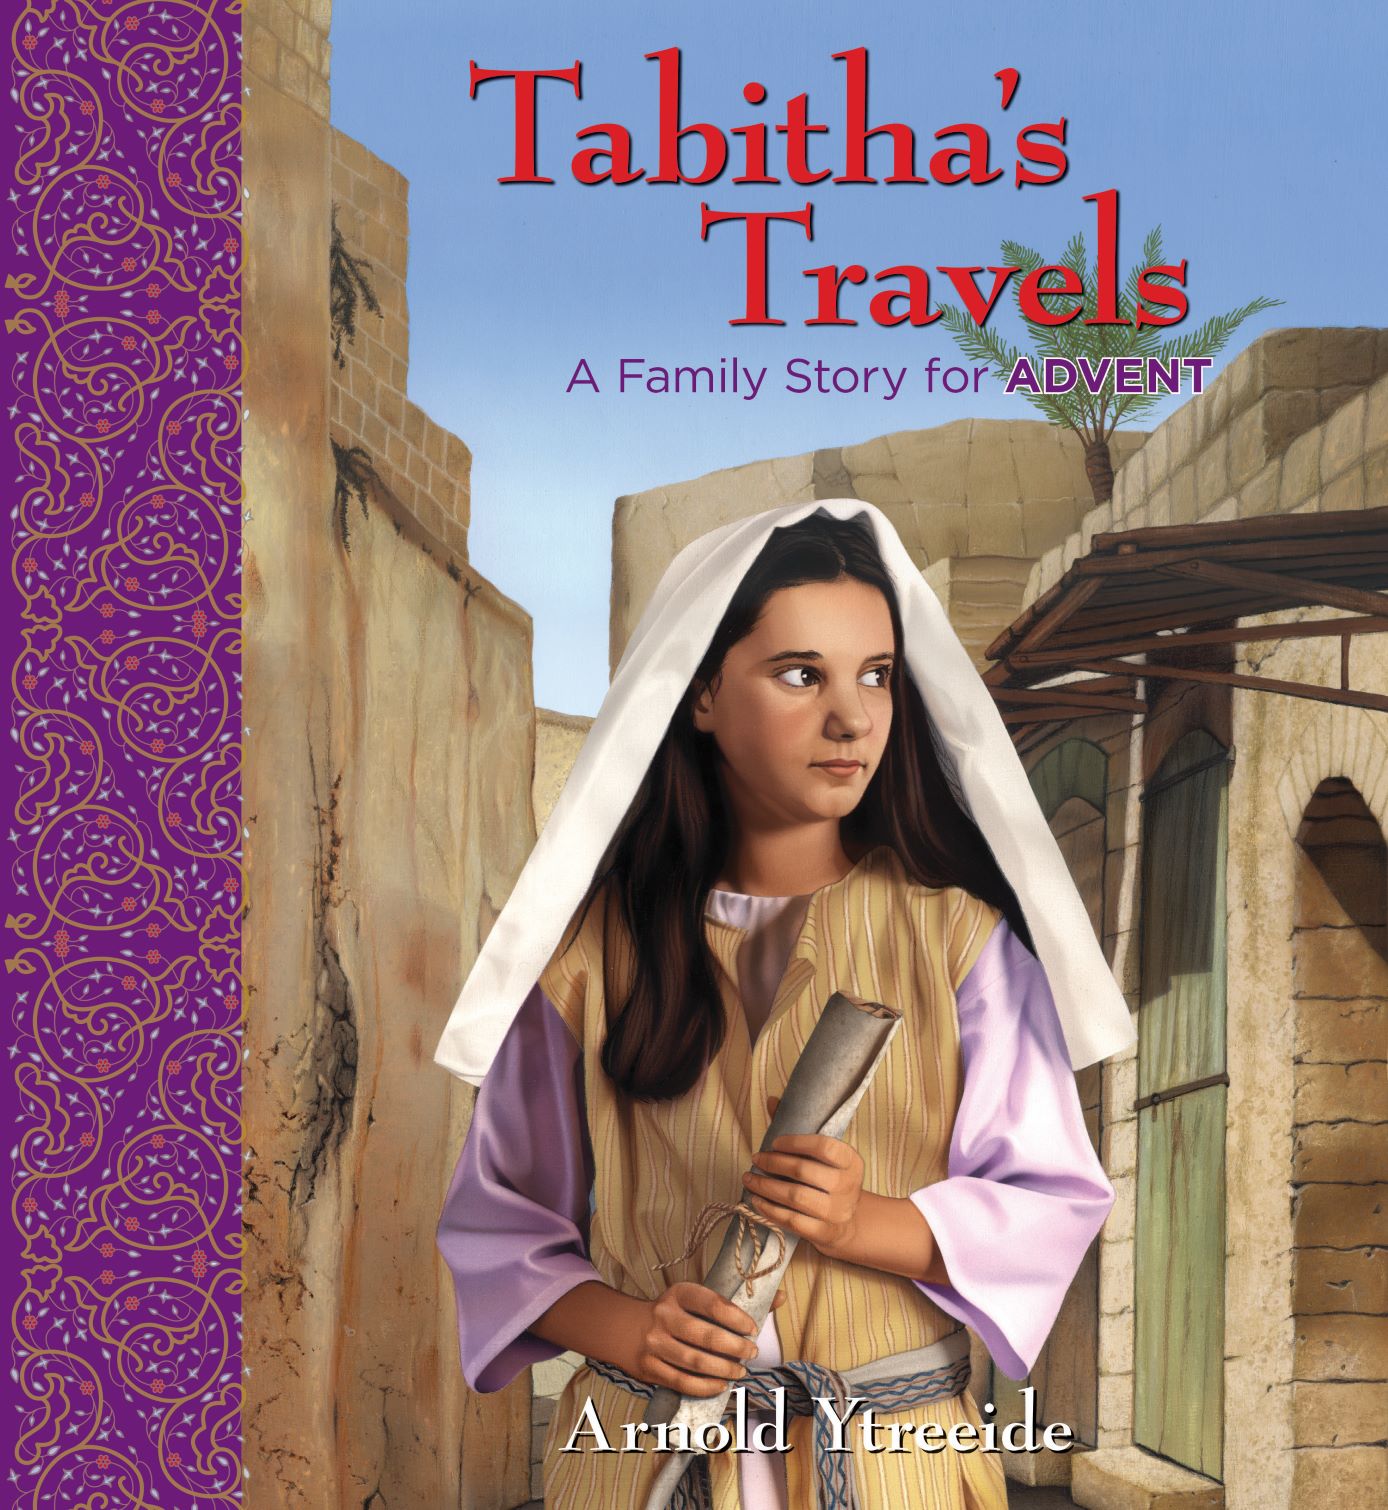 Tabitha's Travels